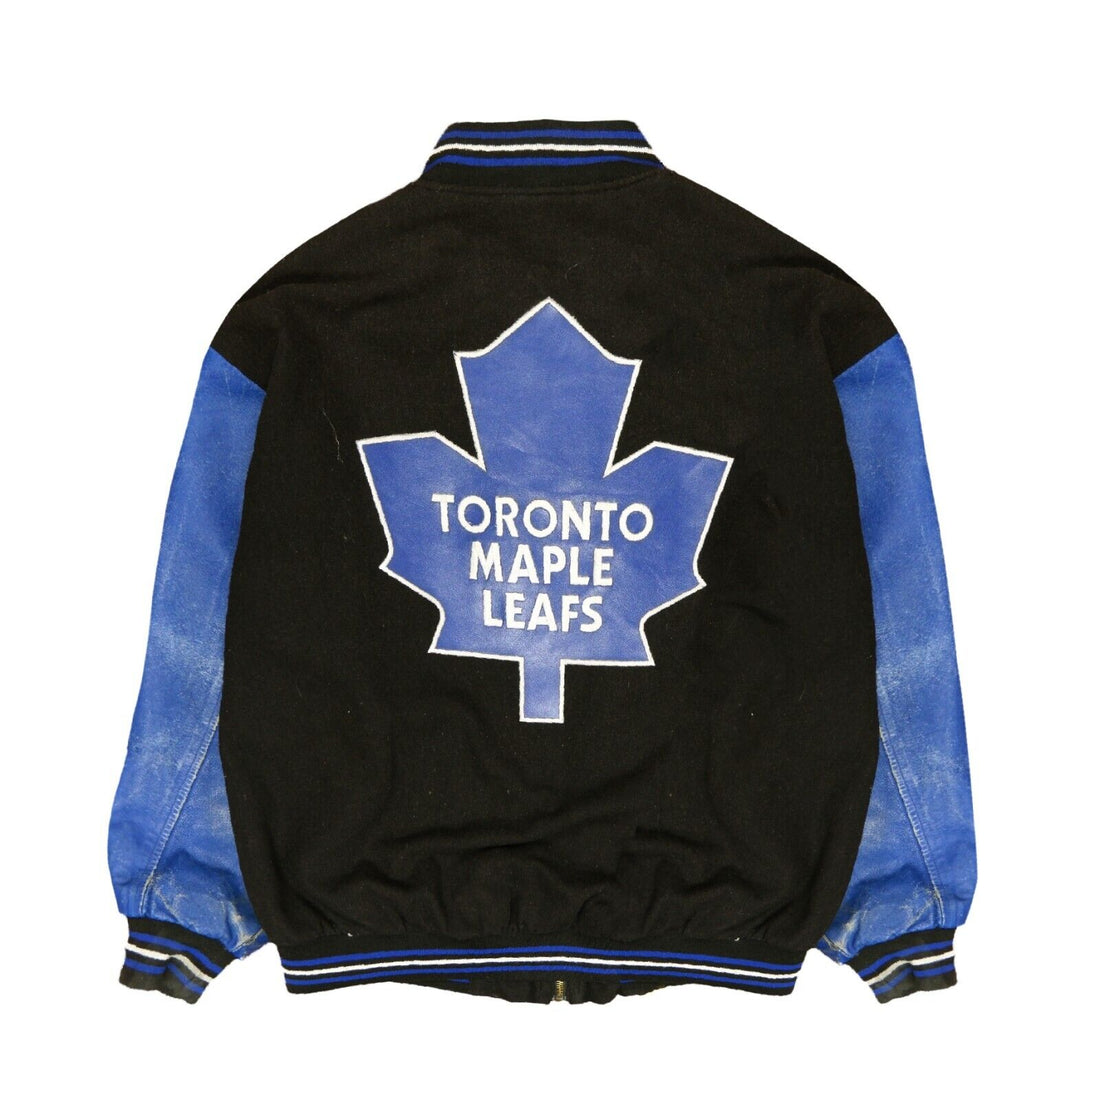 Vintage Vintage 90s Jeff Hamilton Toronto maple leafs jacket